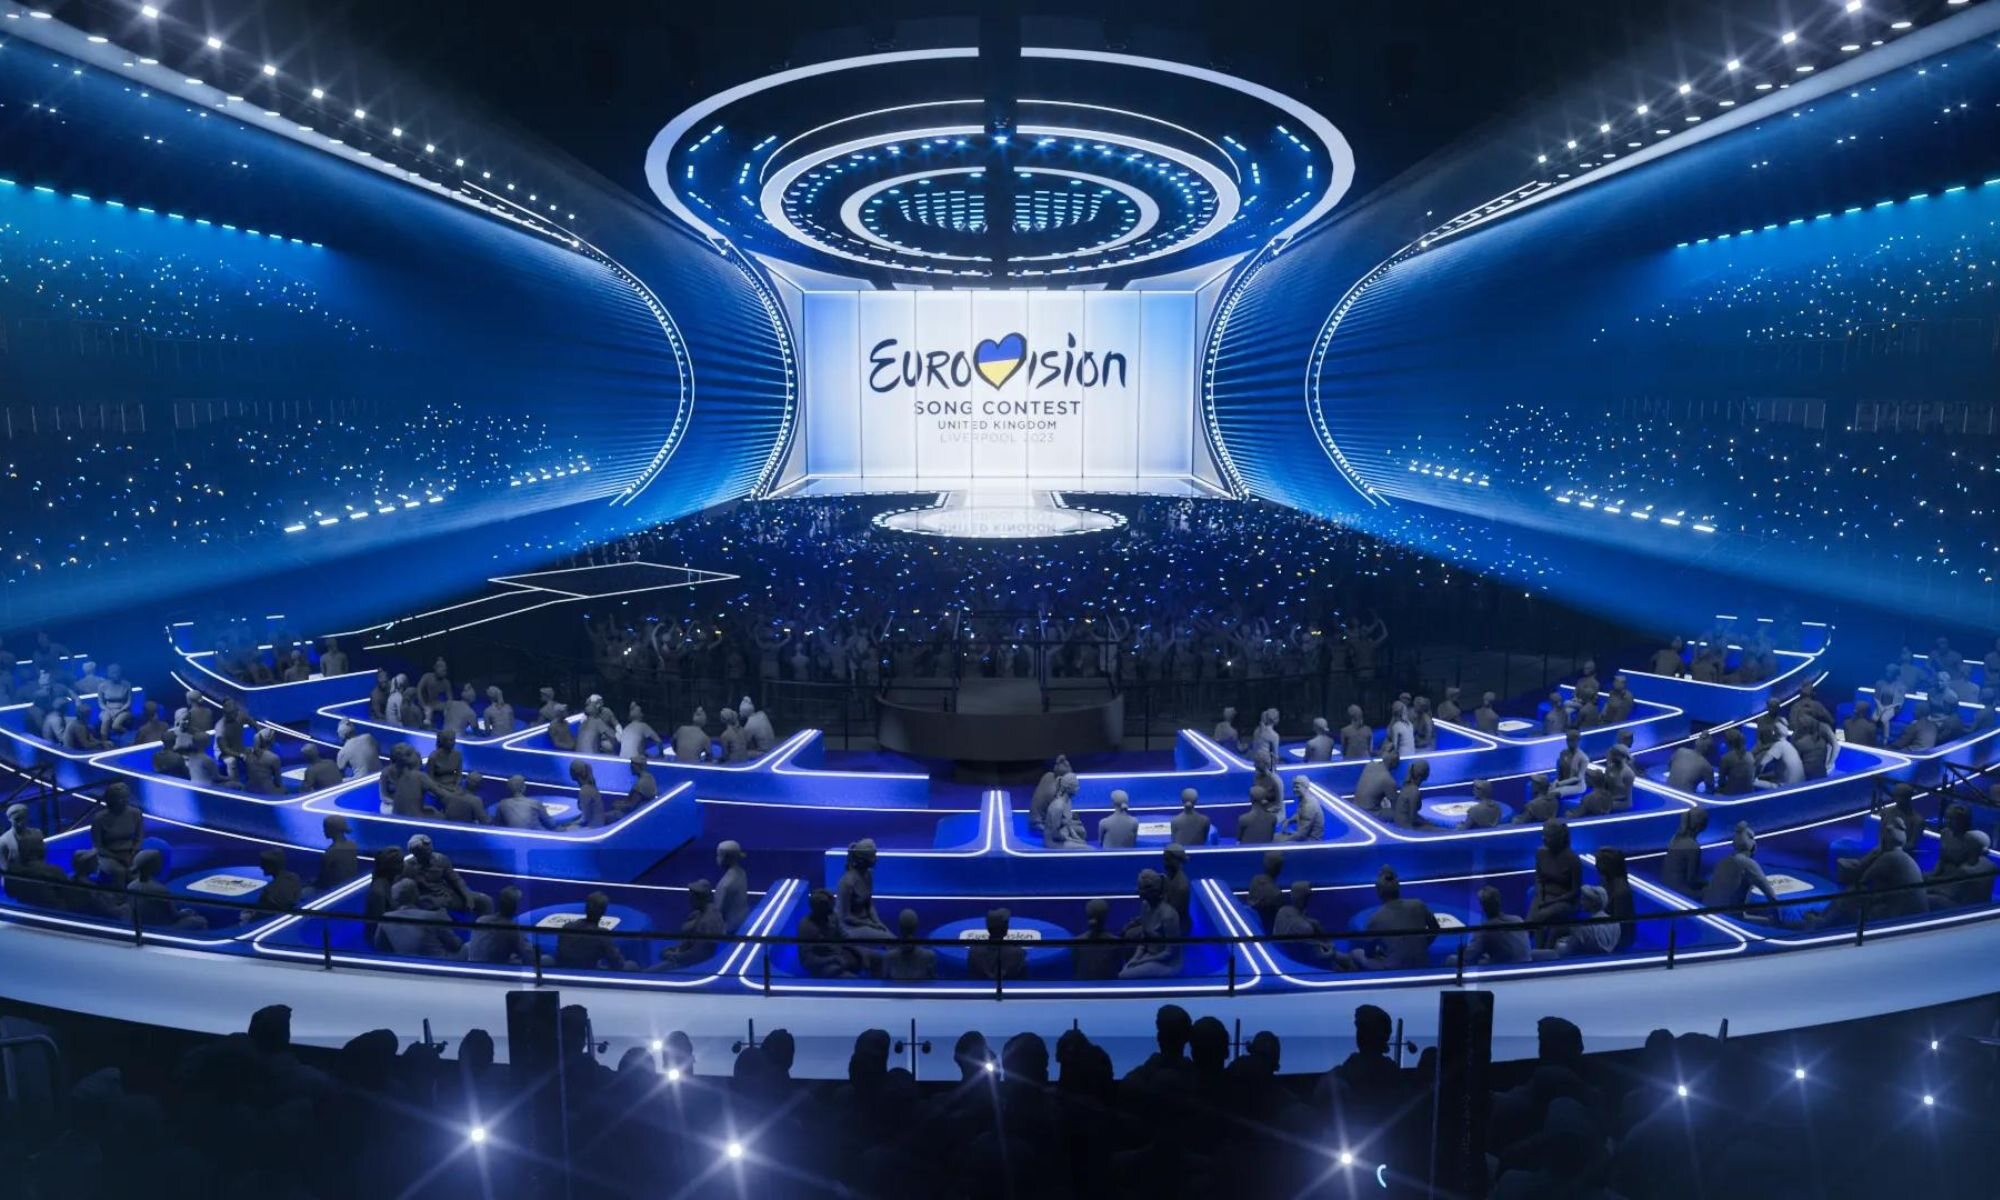 El M&S Bank Arena, donde tendrá lugar 'Eurovisión 2023'